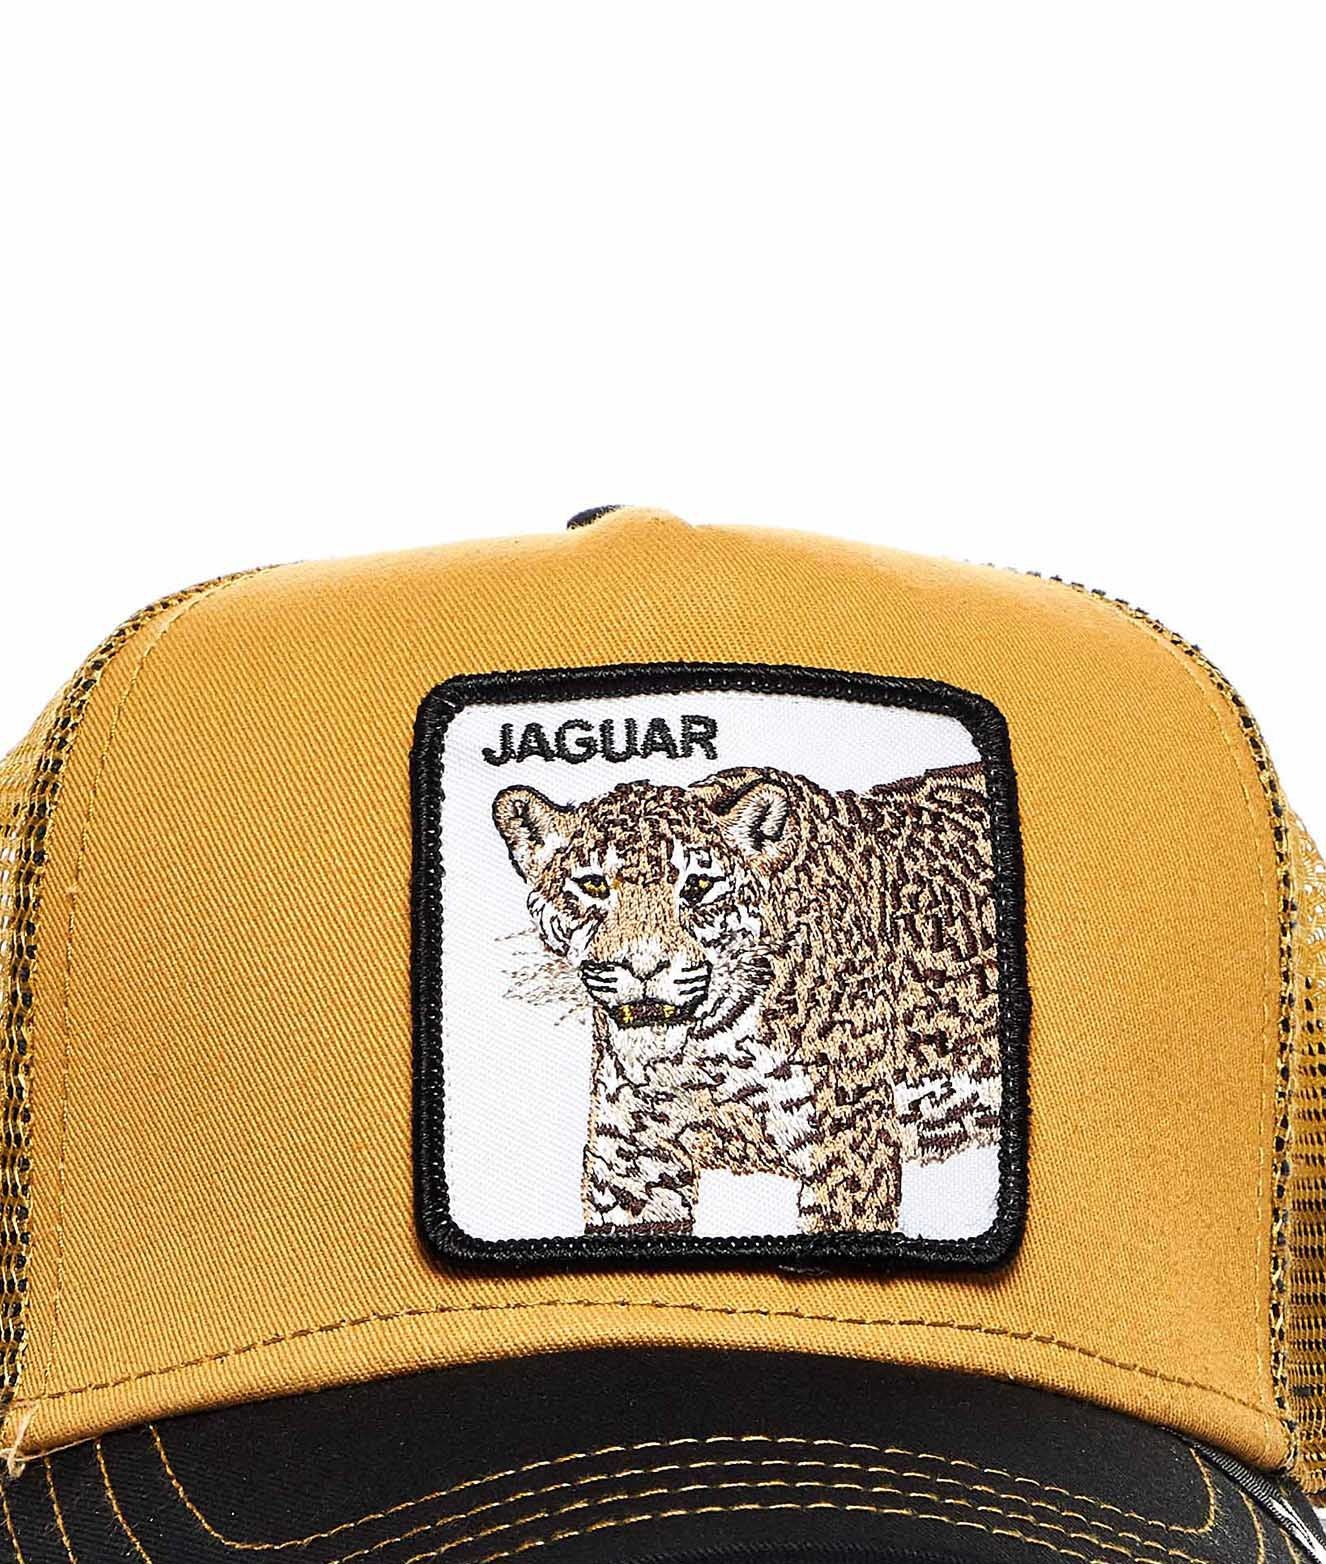 gorra GOORIN BROS jaguar